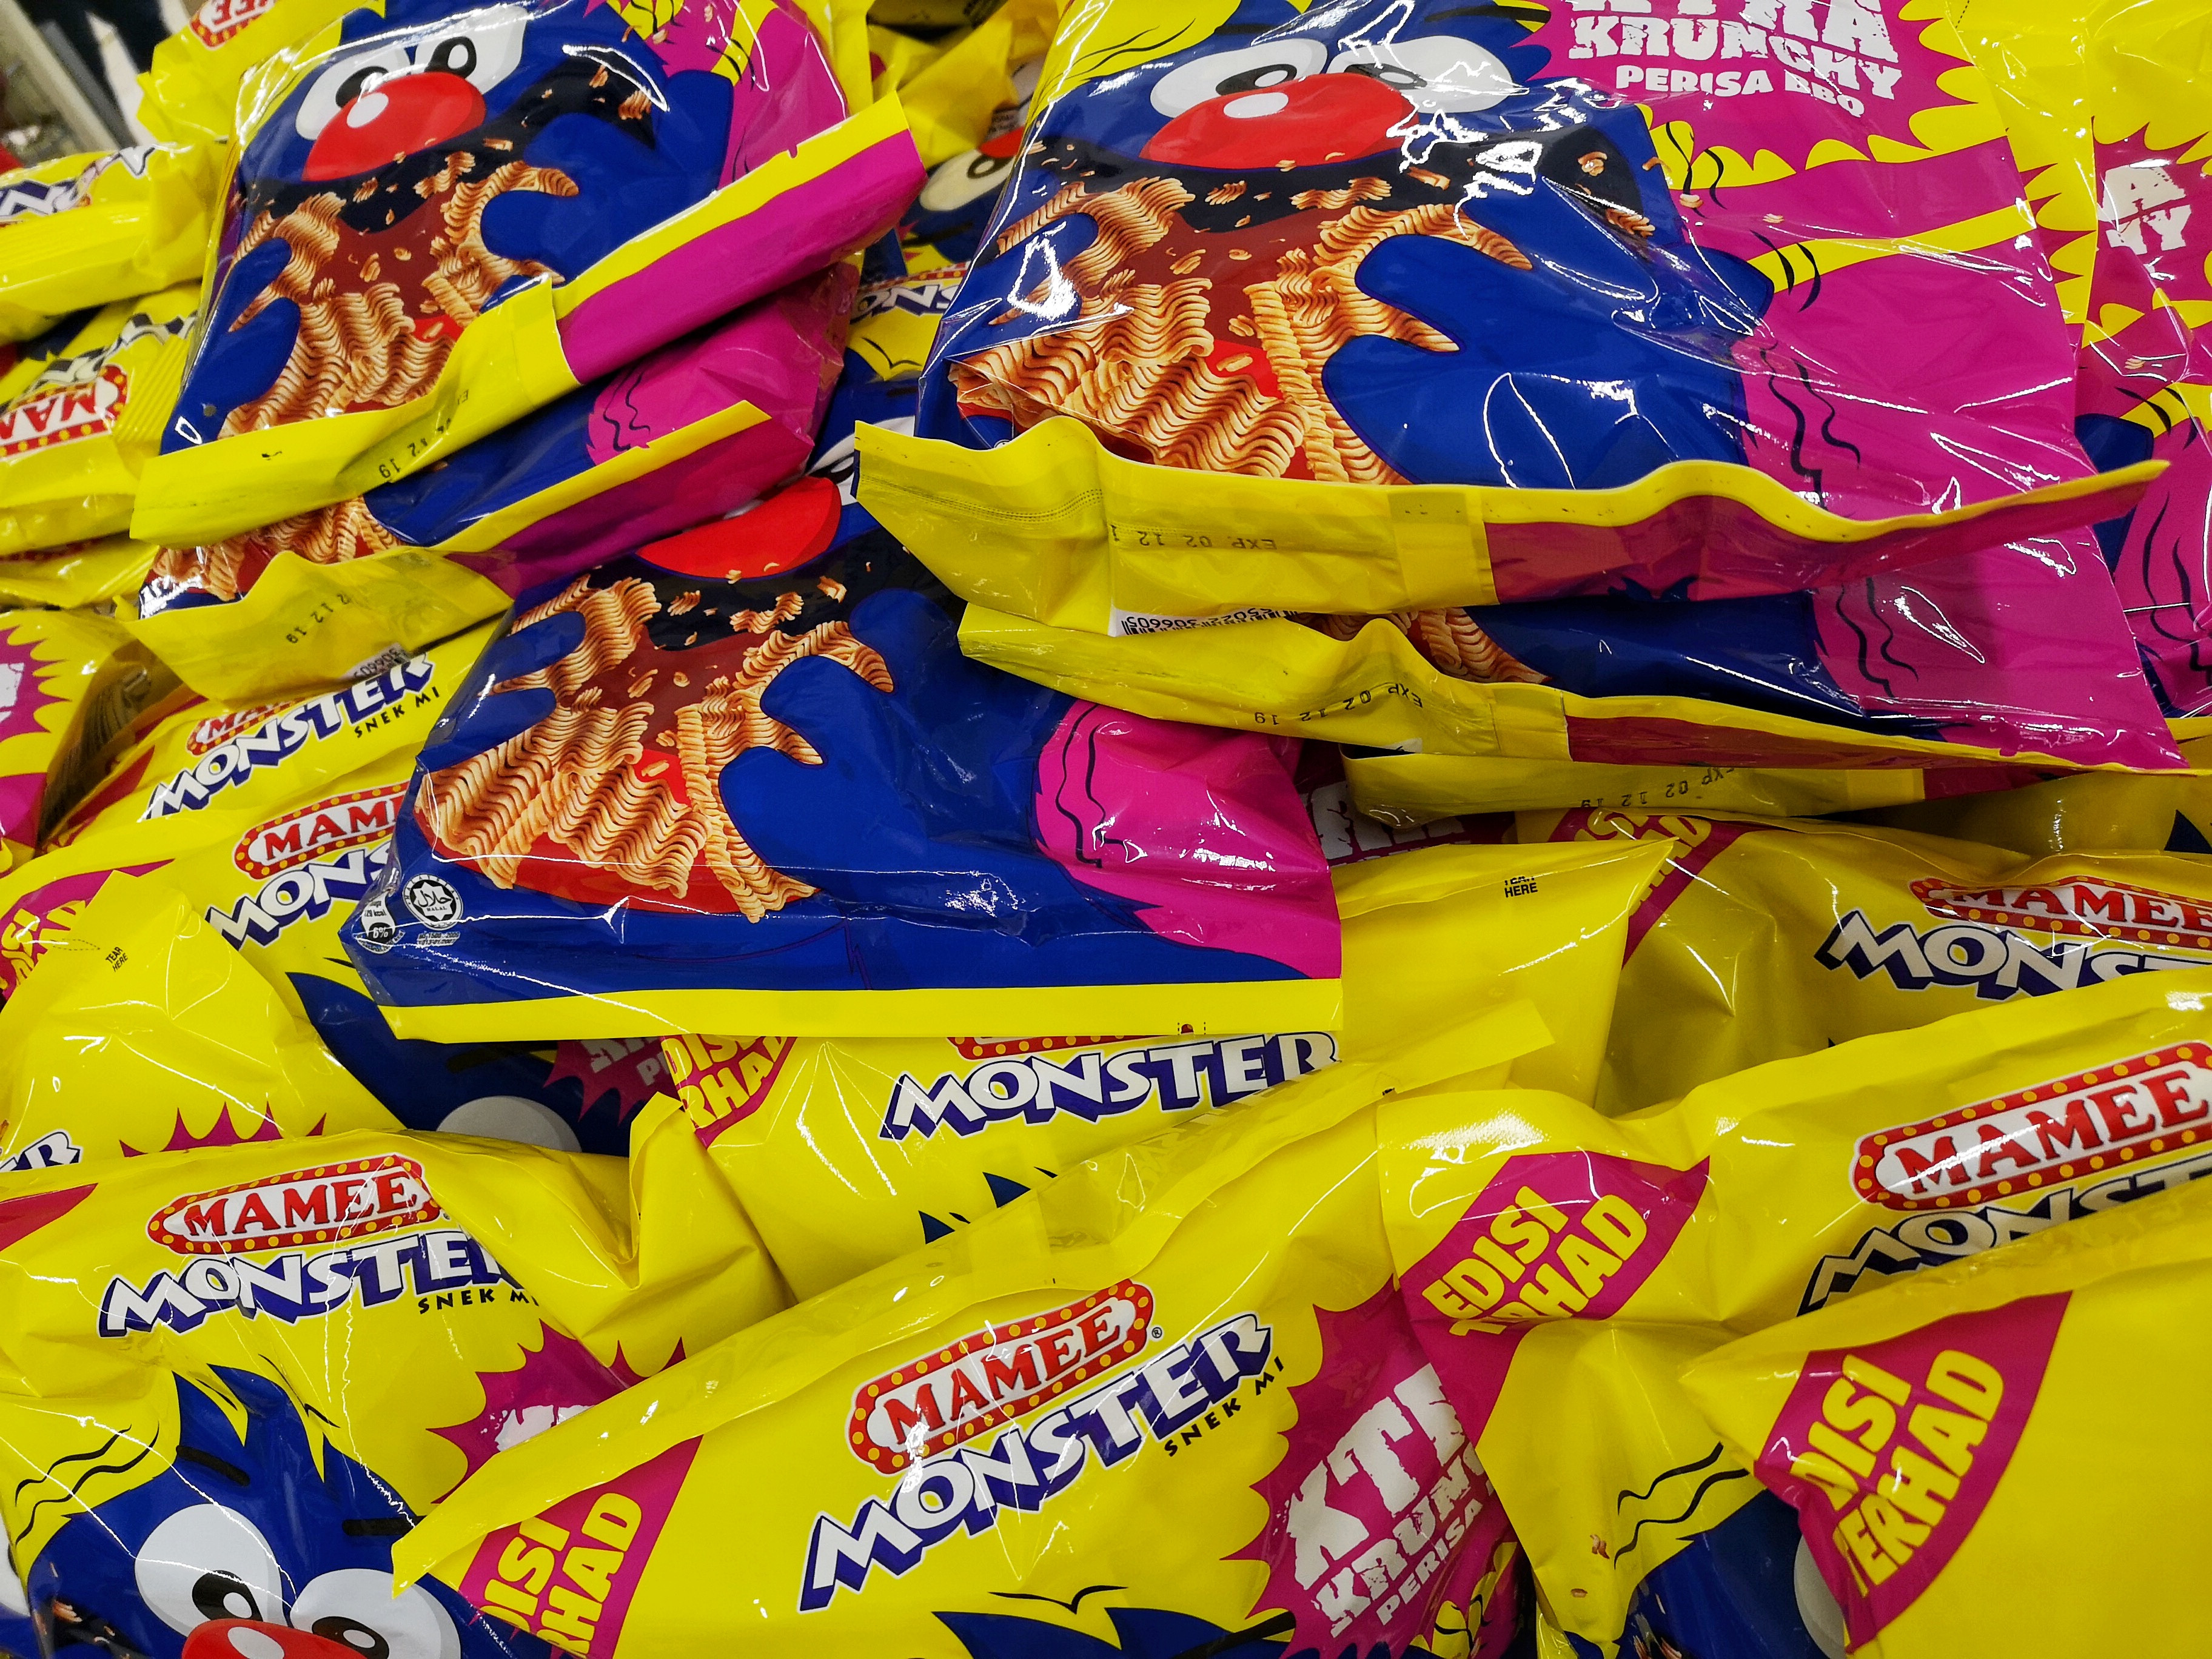 Mamee snacks. Photo: Shutterstock